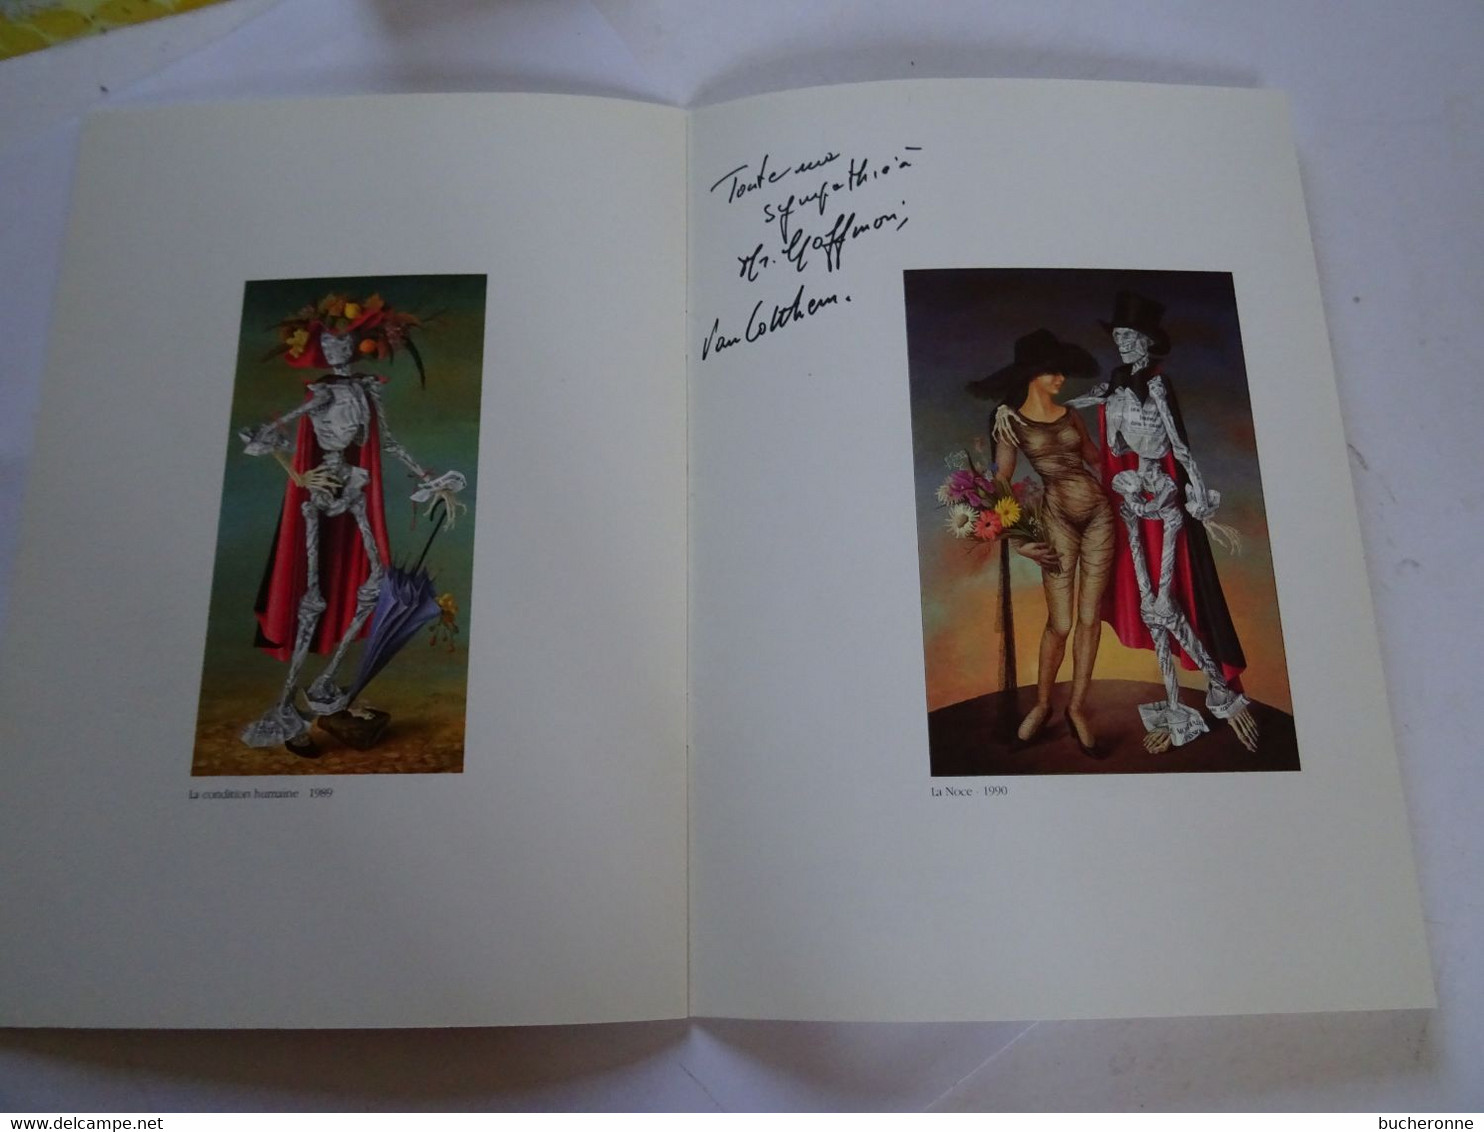 catalogue d'exposition,Michèle Van Cotthem, peintre 1990 ESPACE BAUDELAIRE RILLIEUX-LA-PAPE avec autographe